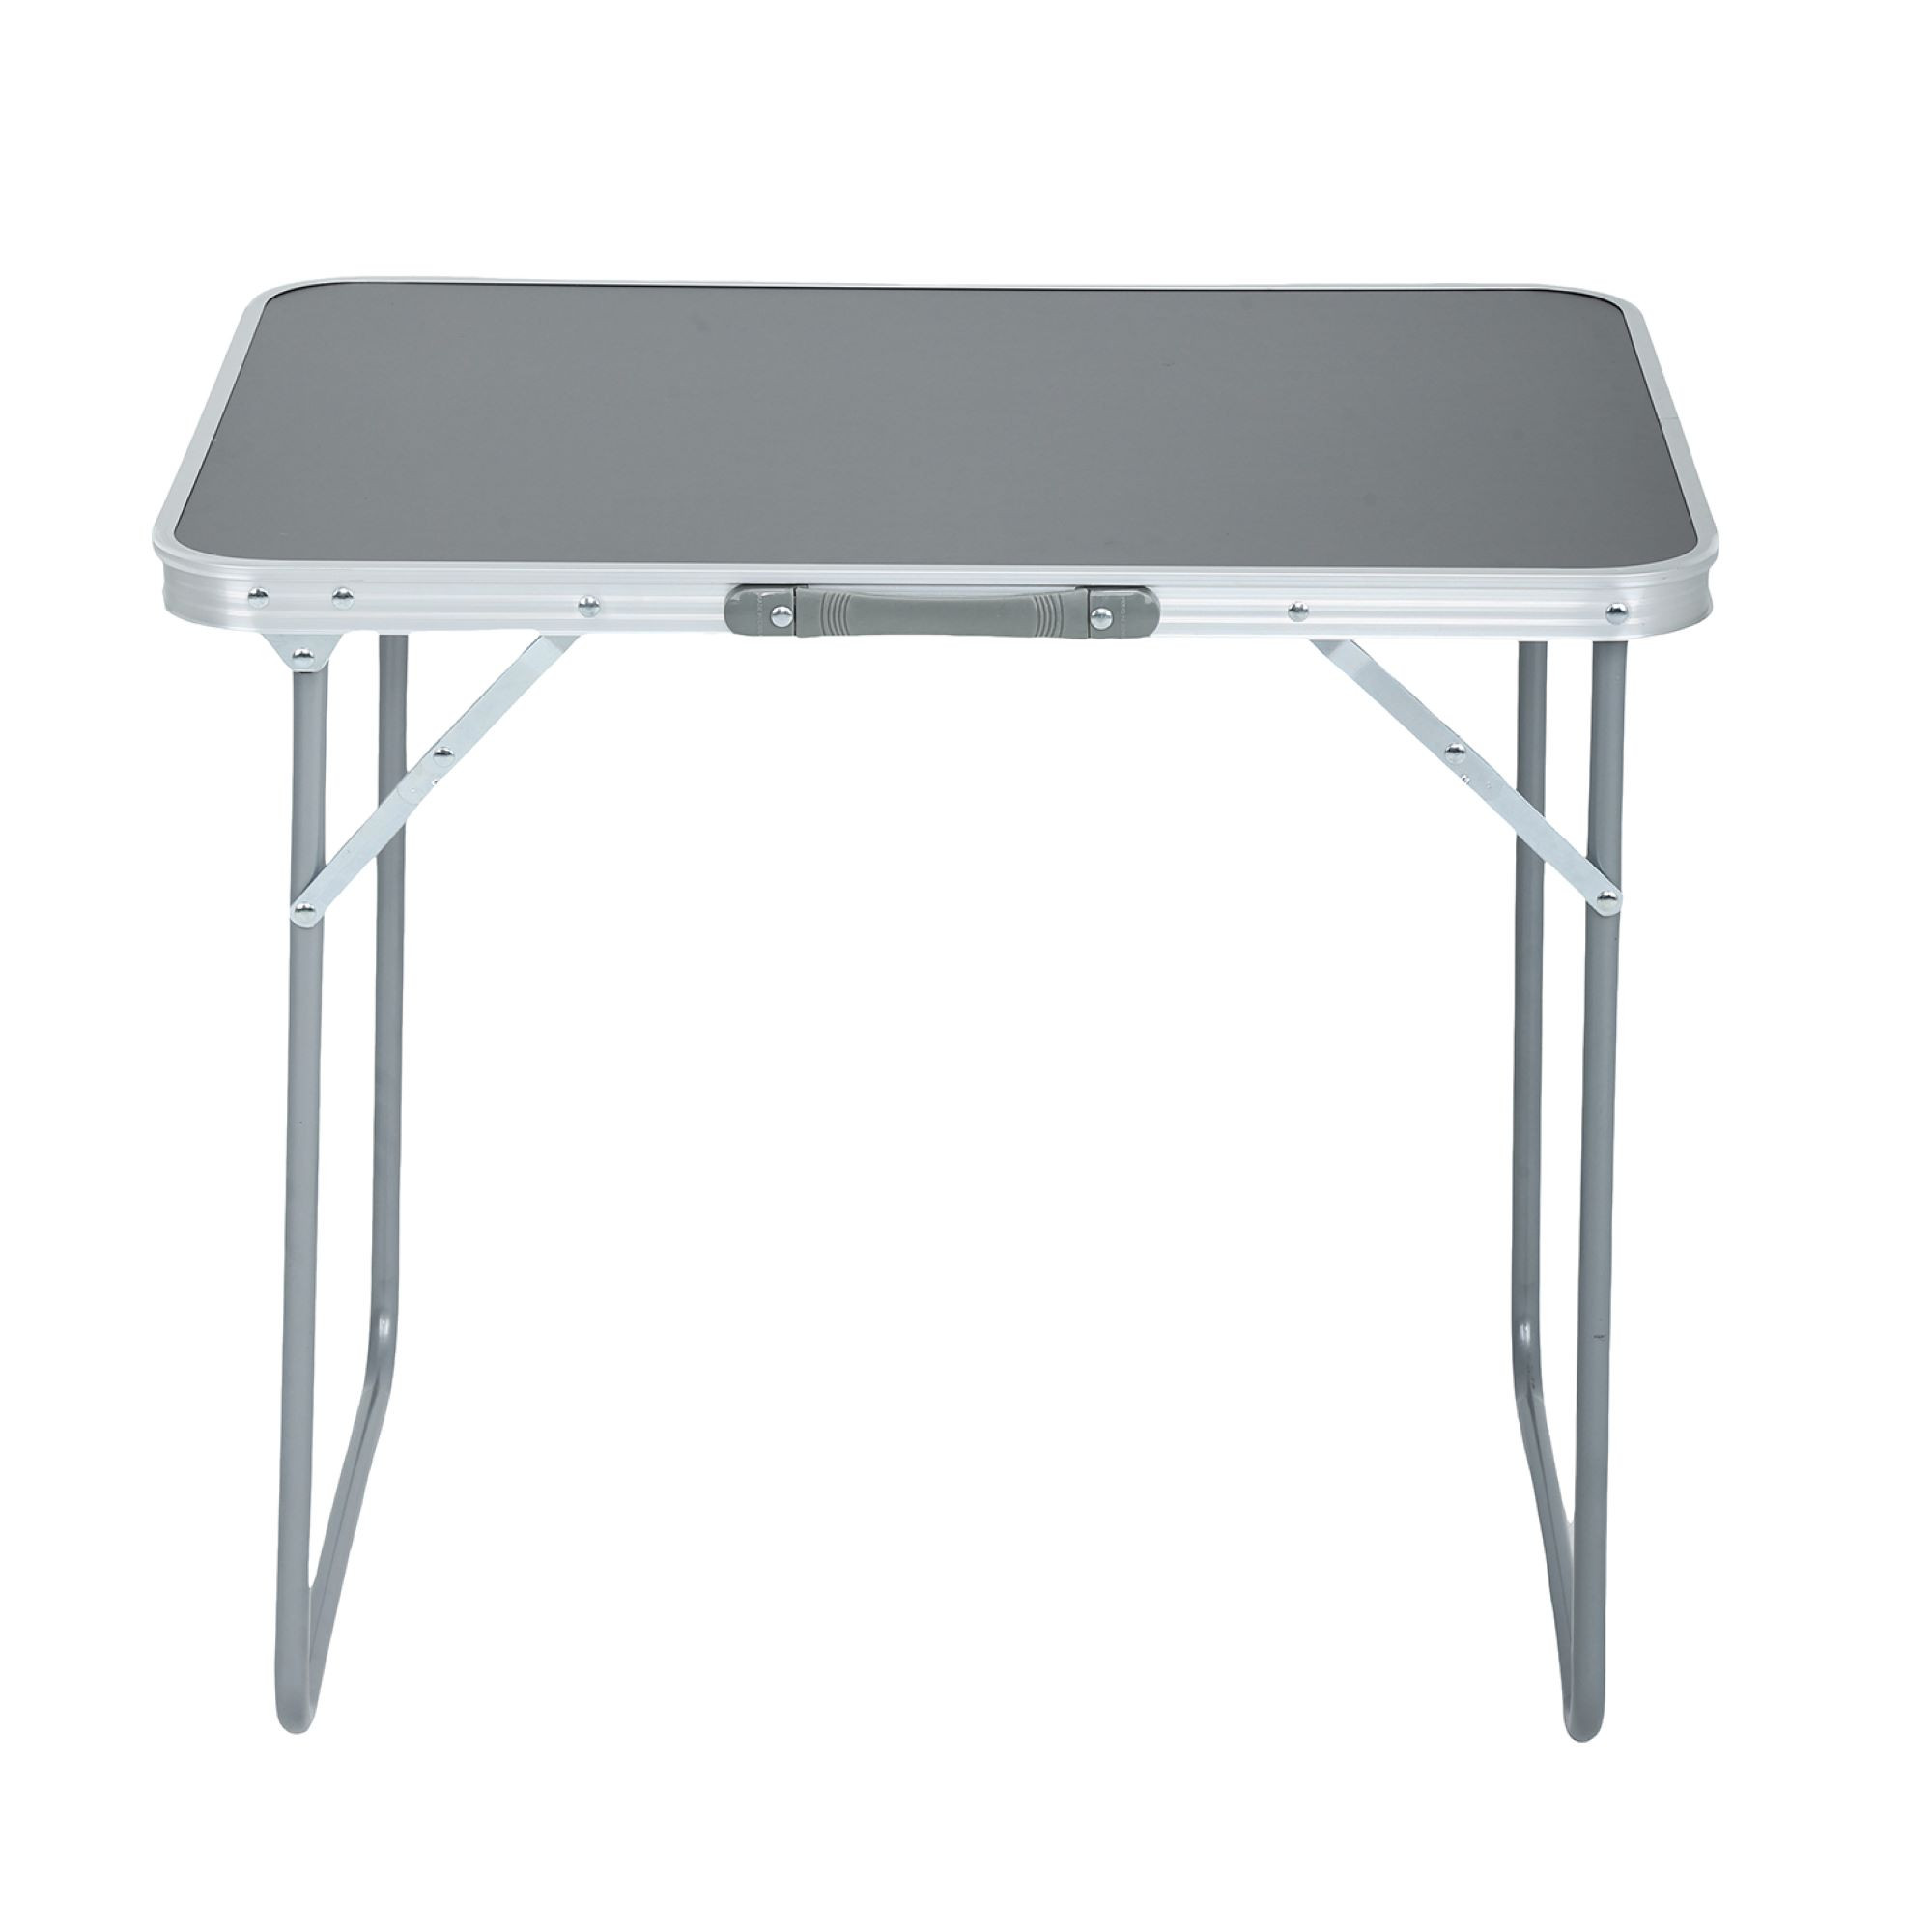 Składany stolik kempingowy ARES z szarego aluminium wymiary 70x60x50 cm - AKORD Fabryka Mebli